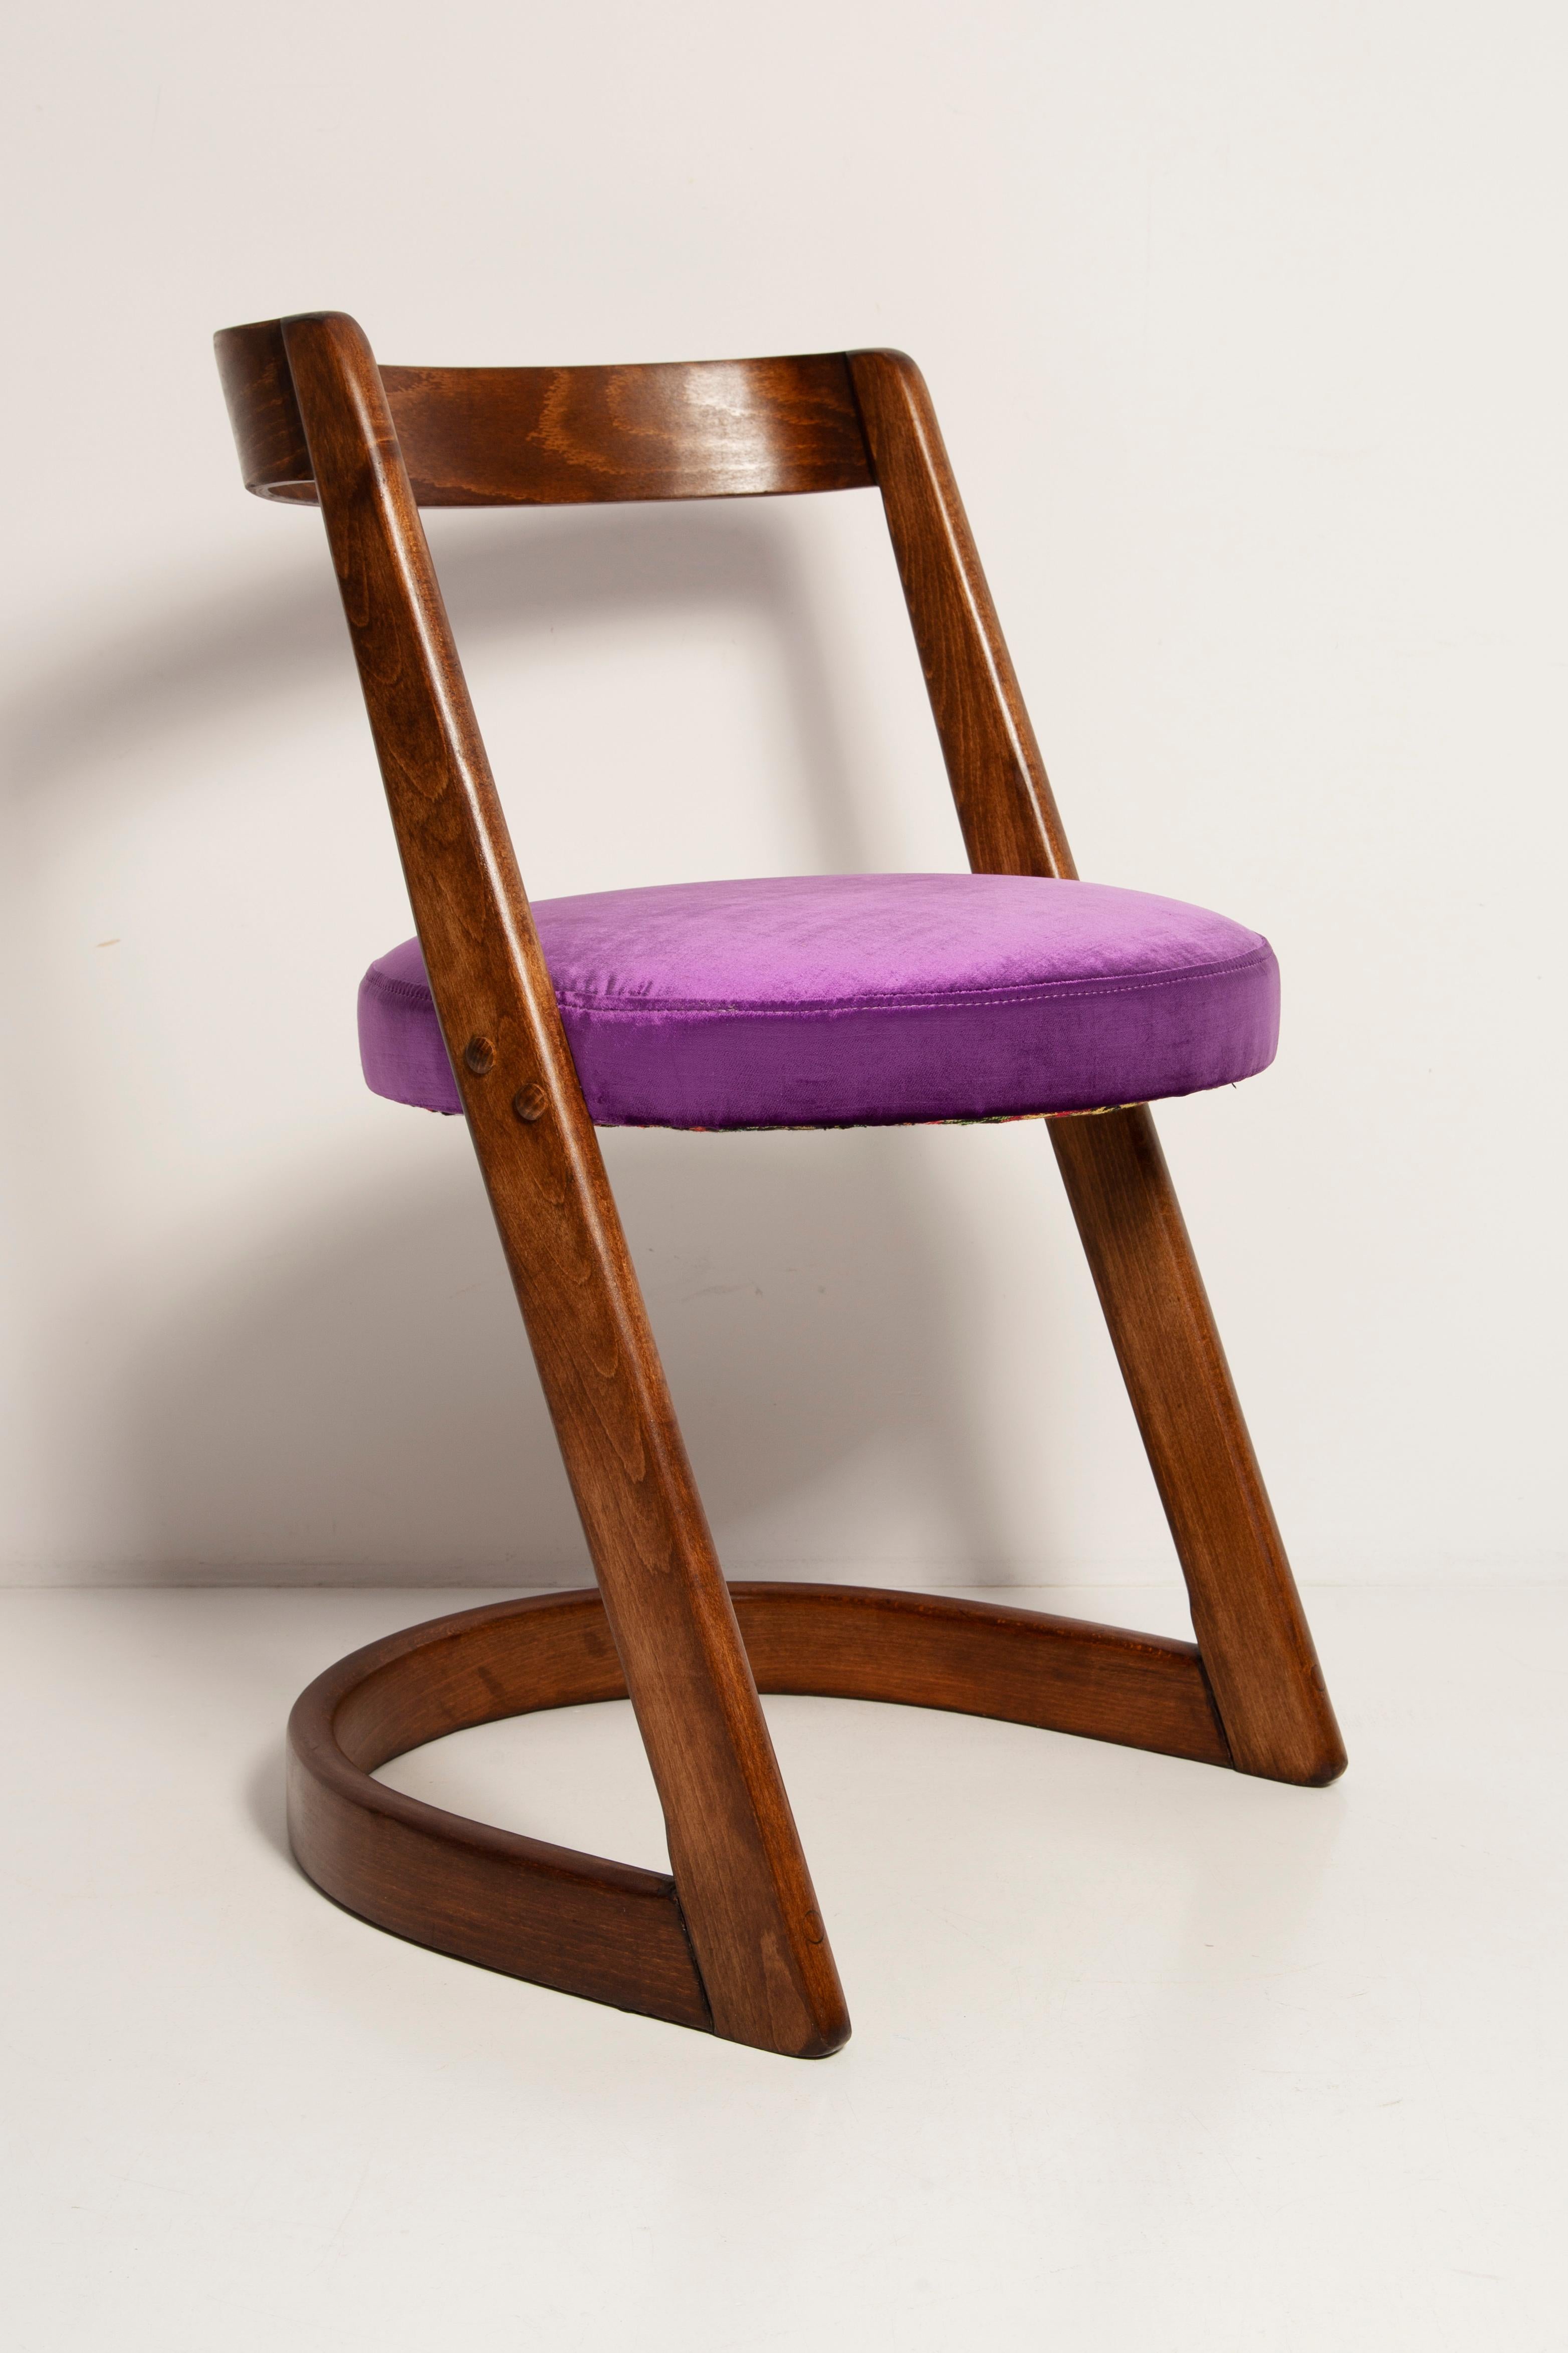 French Midcentury Purple Velvet Halfa Chair, Baumann, France, 1970s For Sale